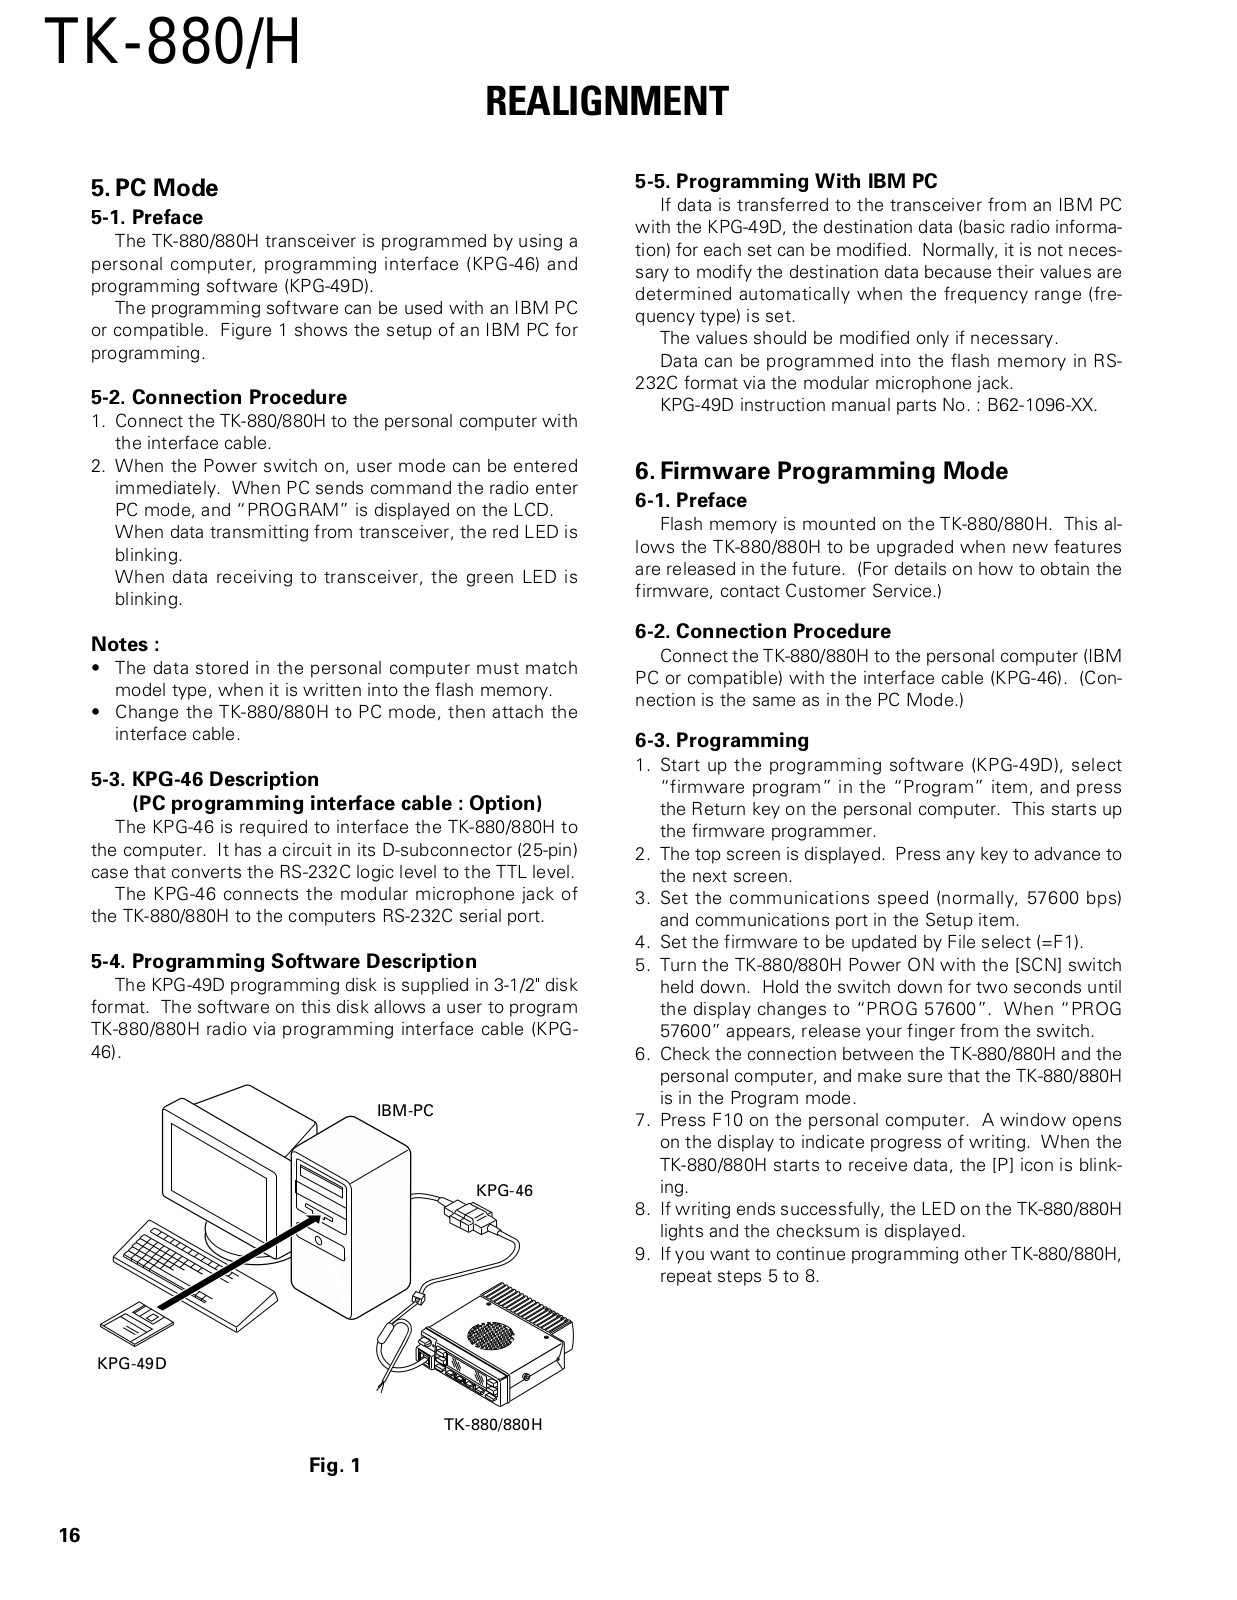 kenwood tk 880 manual programming